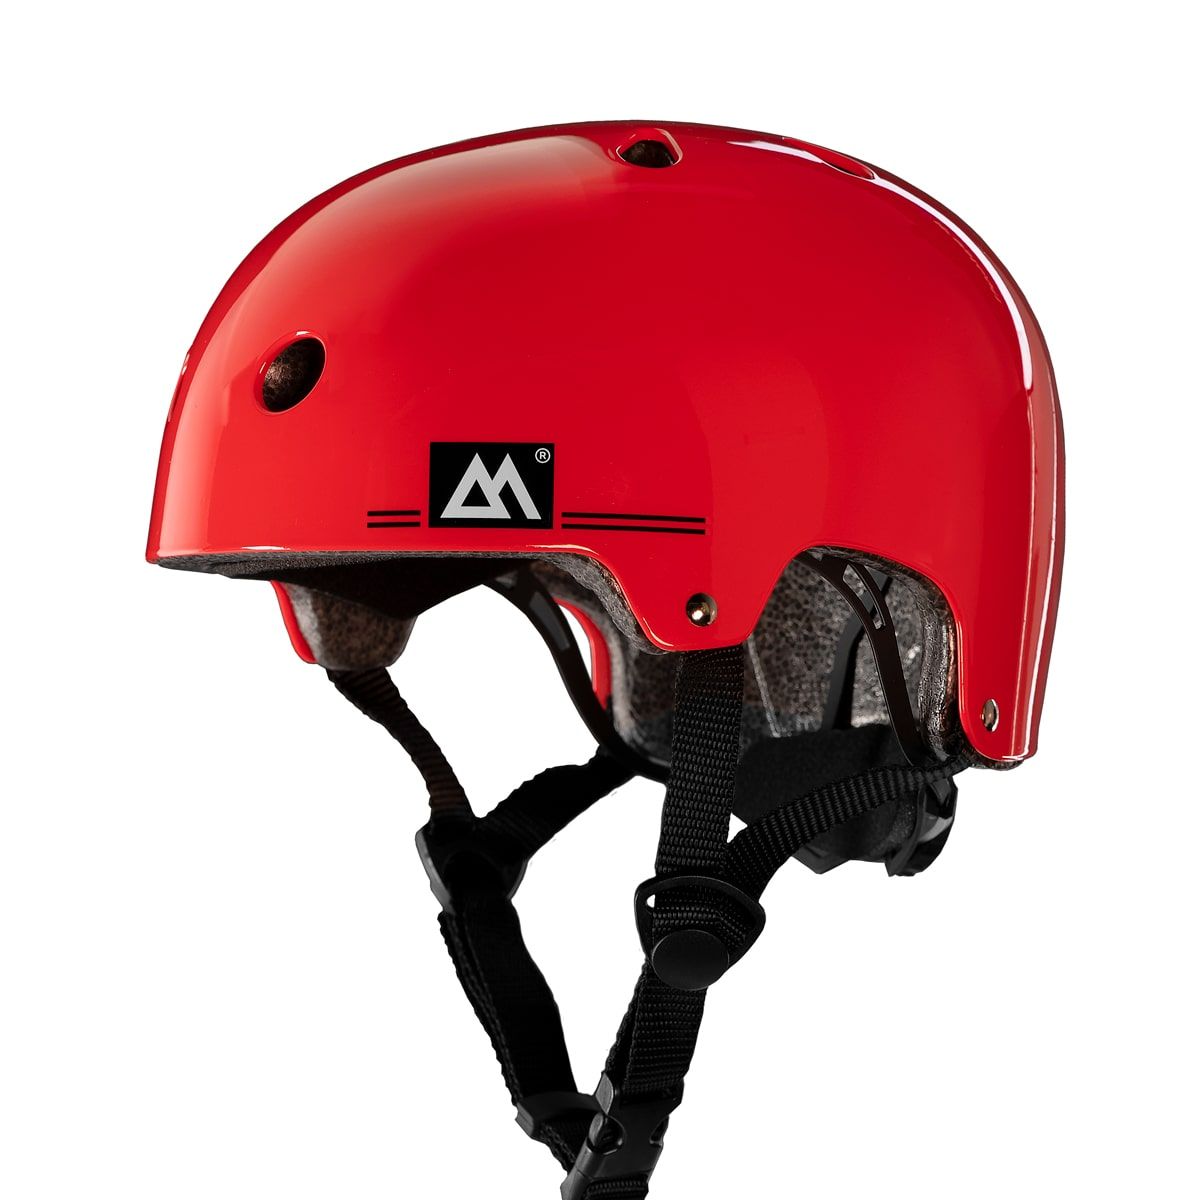 Magneto Kids Skateboard Helmet - Red 2